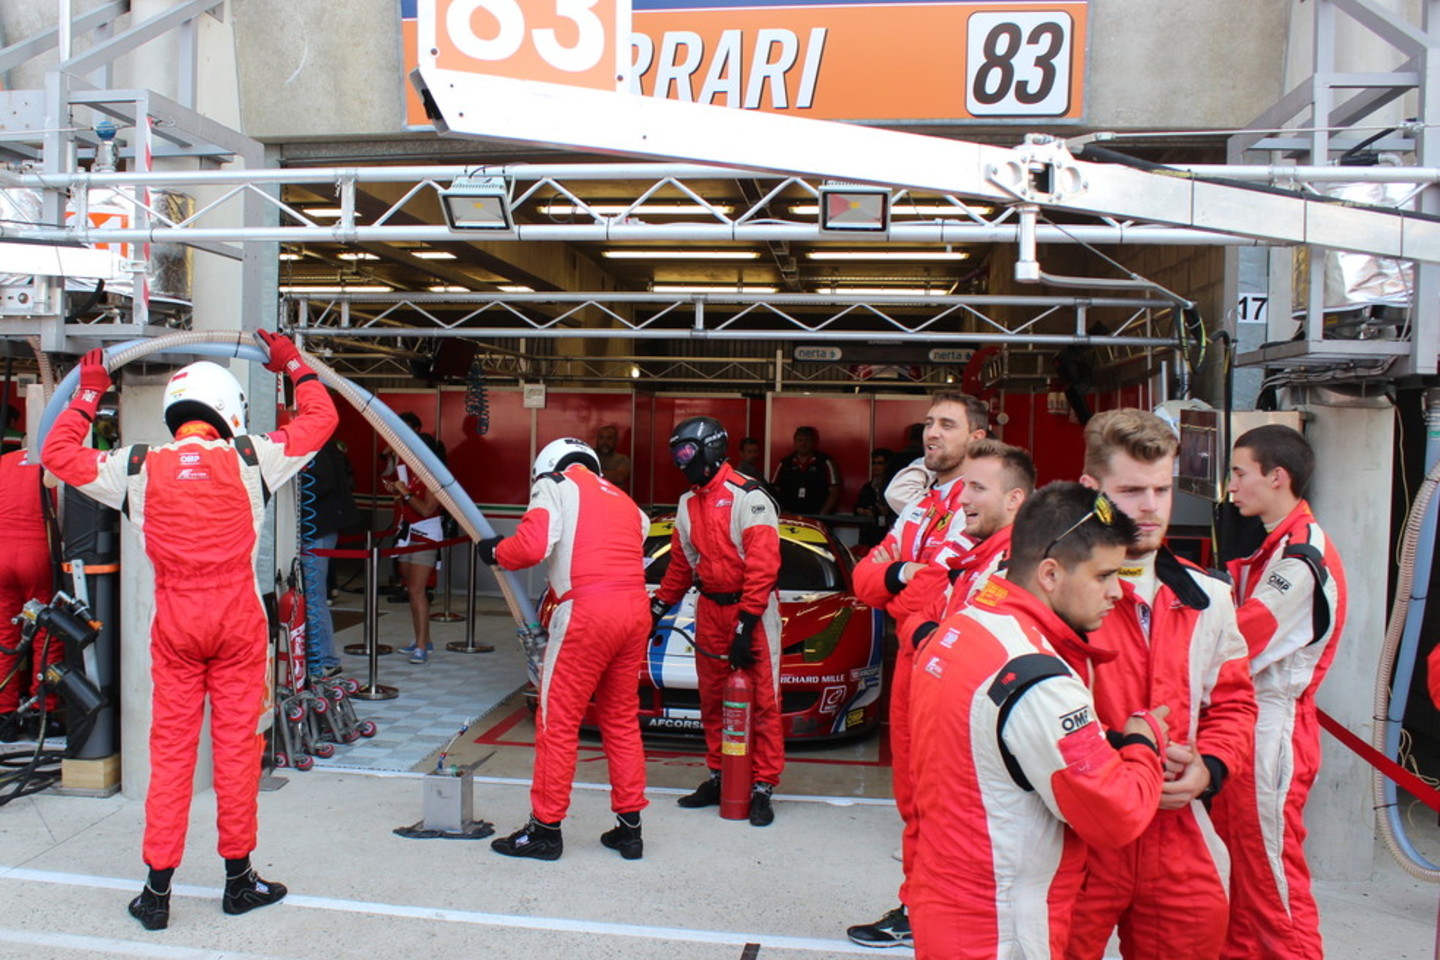 Le Mano 24 valandų lenktynių organizatoriai ir dalyviai leido gerbėjams iš arti pažvelgti į automobilius ir garažus.<br>I.Staškutės nuotr.